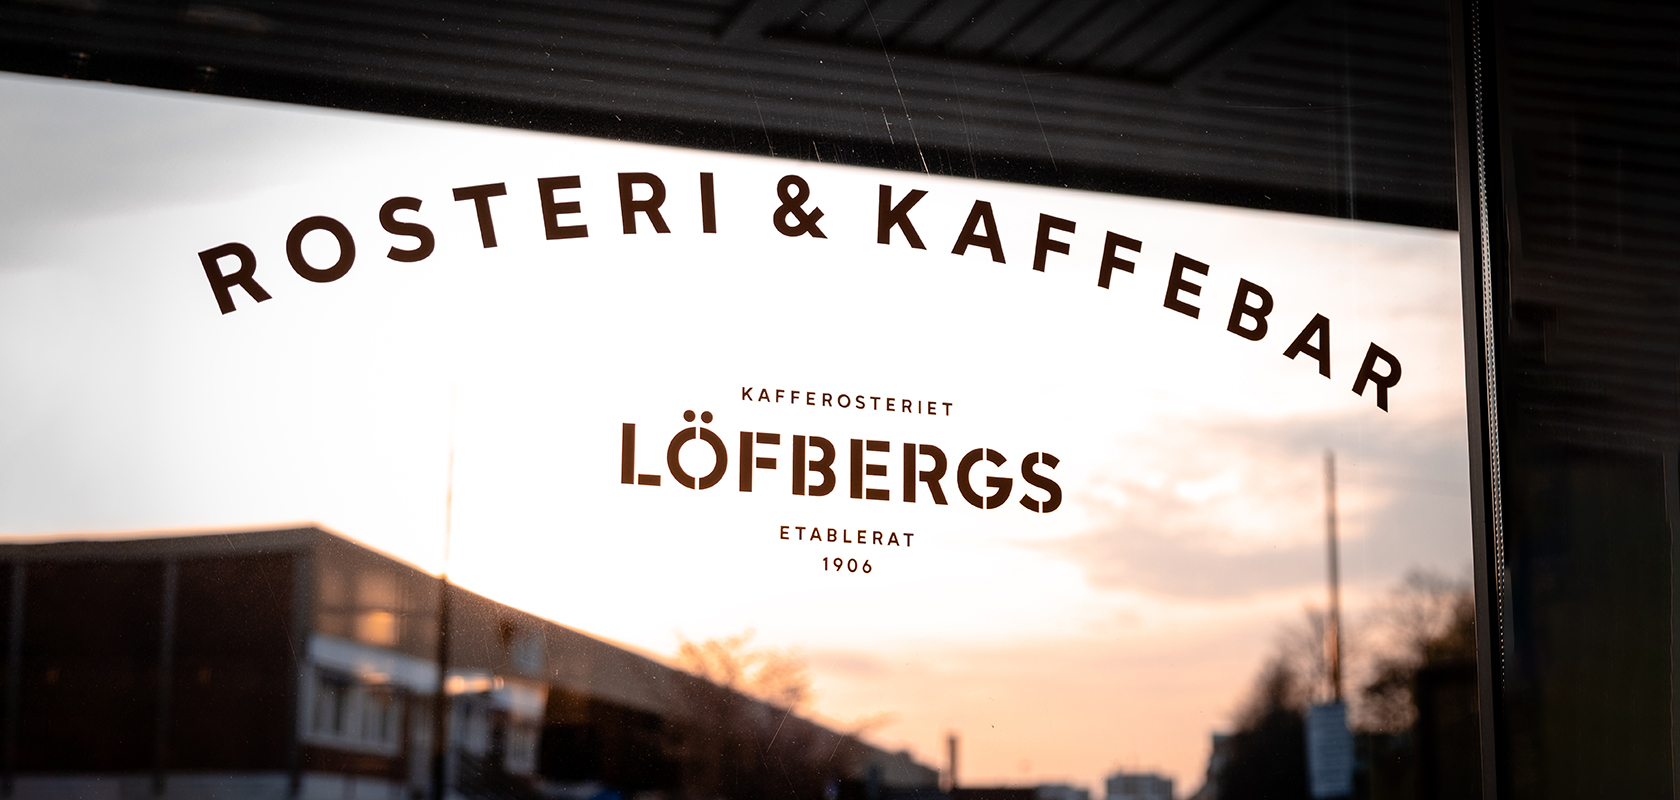 www.lofbergs.se